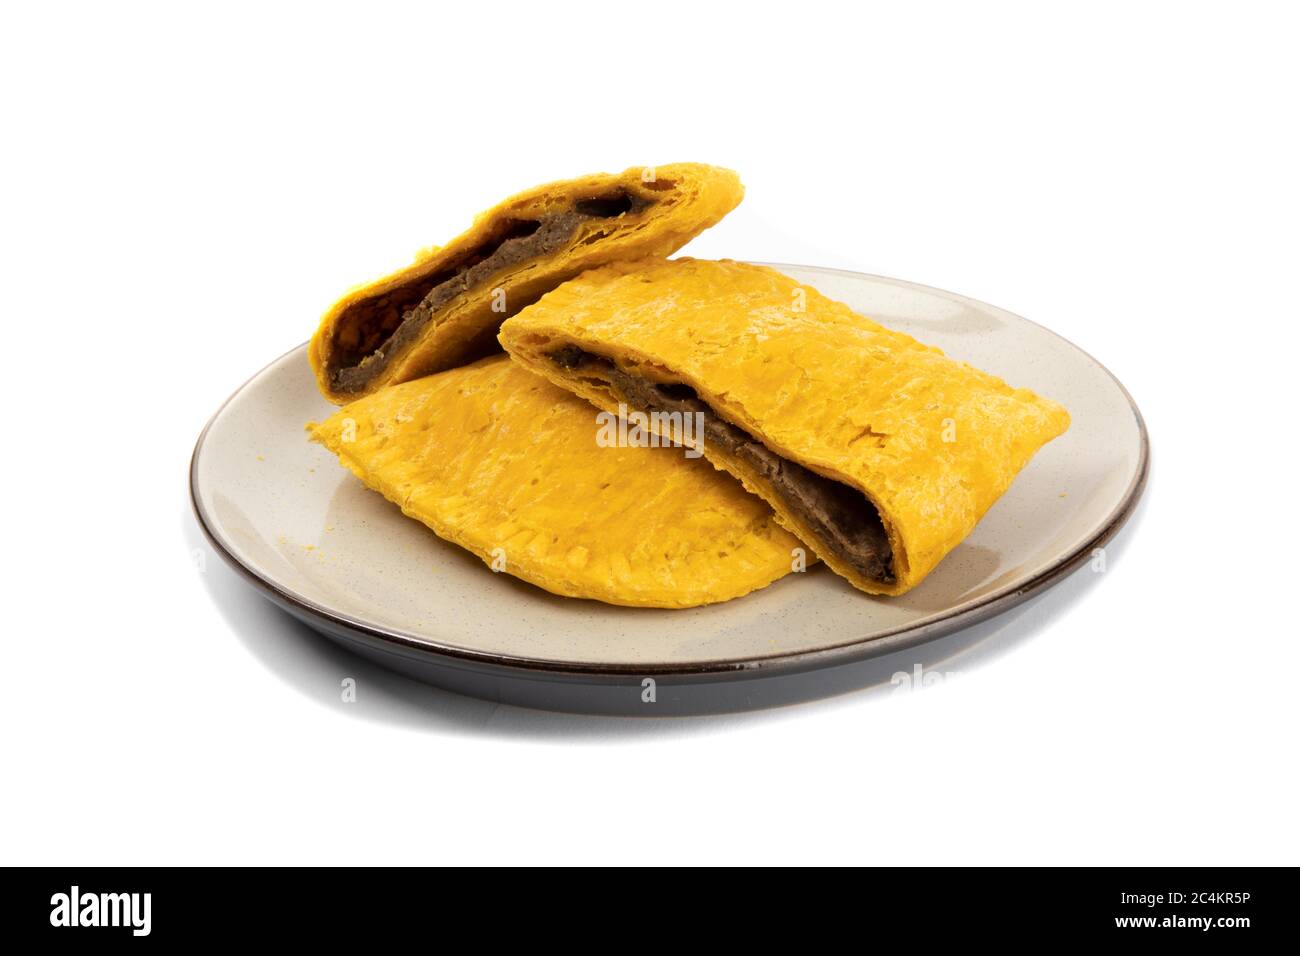 Corte las empanadas picantes de la carne jamaicana o de las Indias Occidentales en un plato aislado en blanco Foto de stock